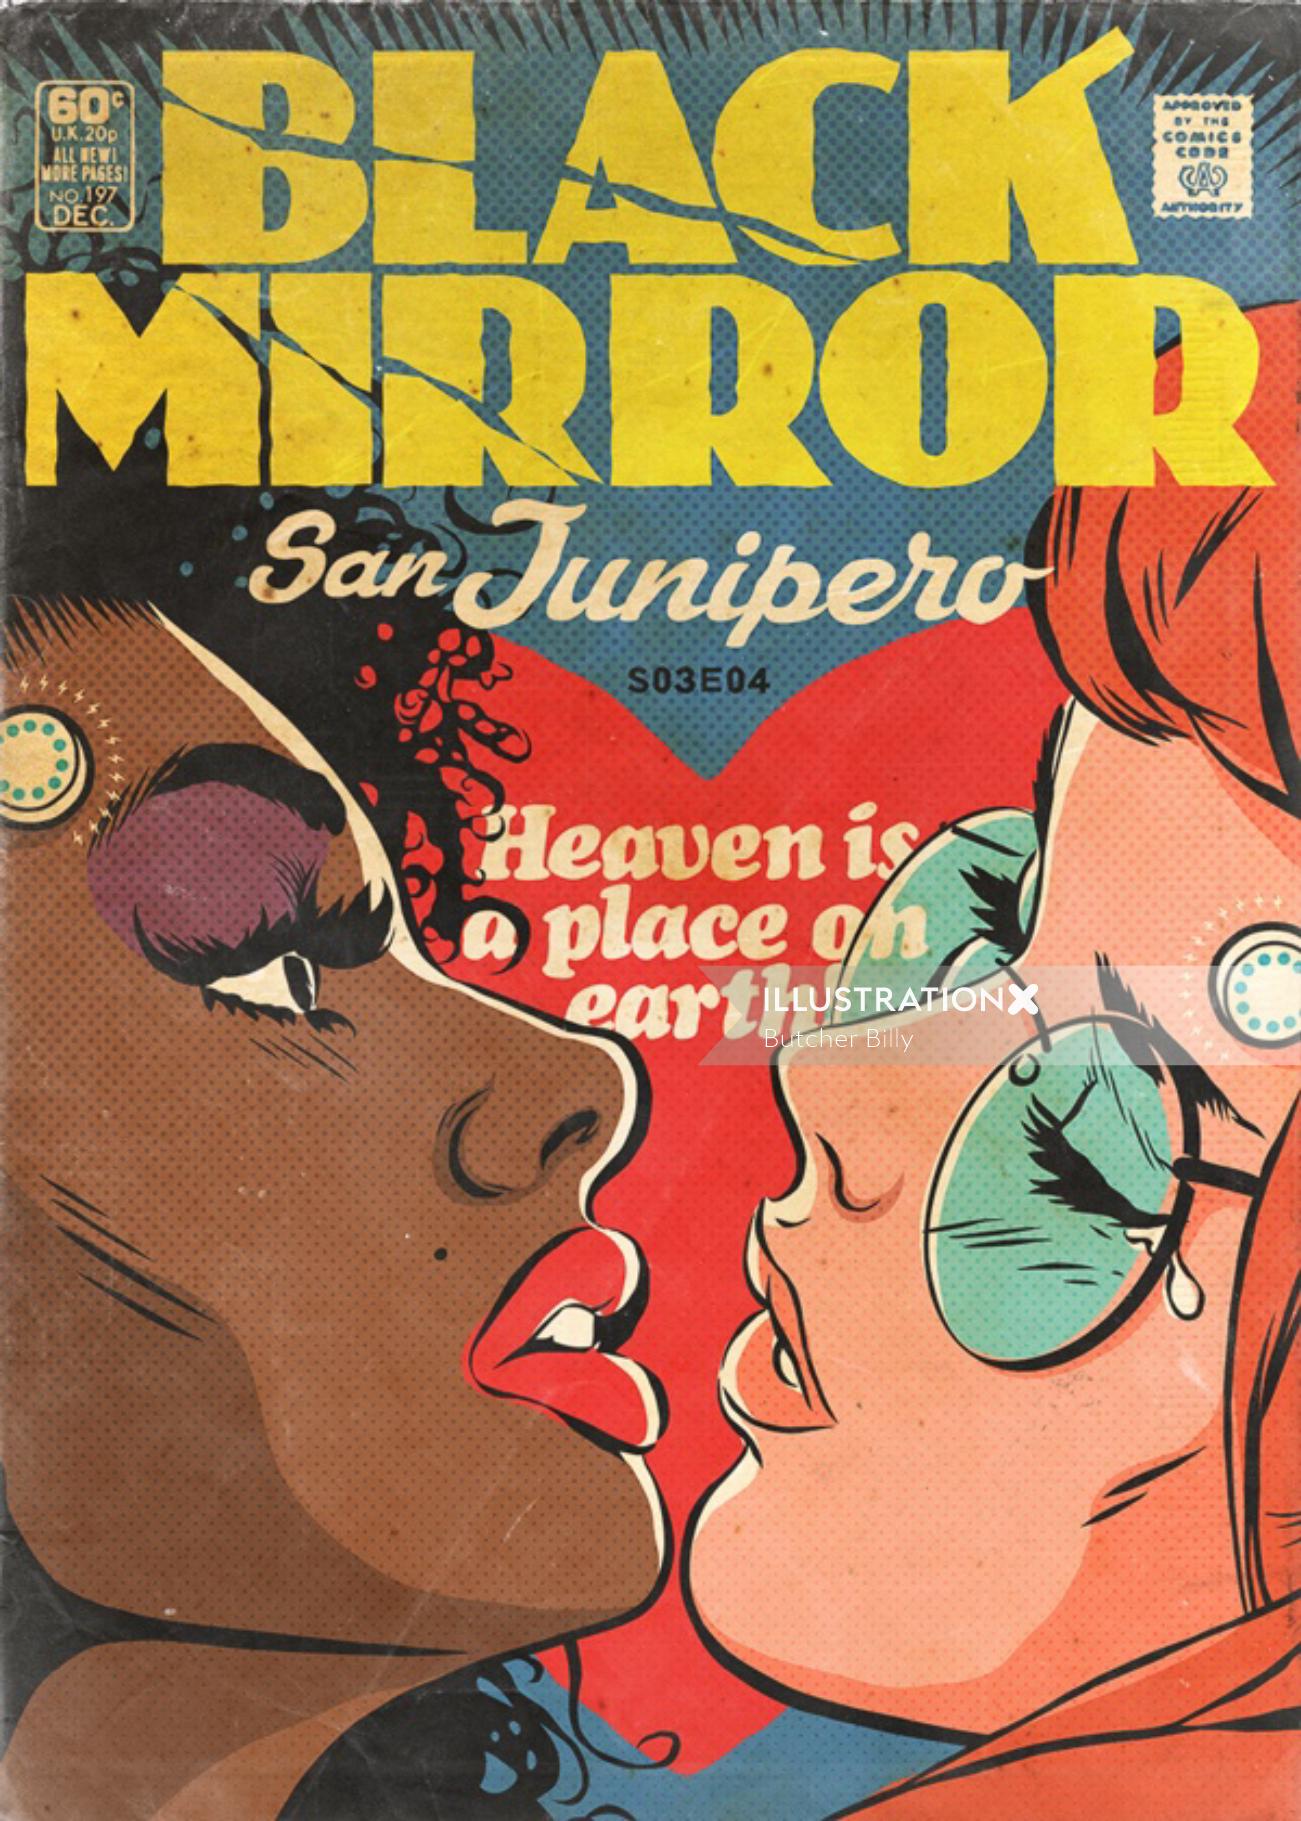 Black Mirror comic book cover illustration